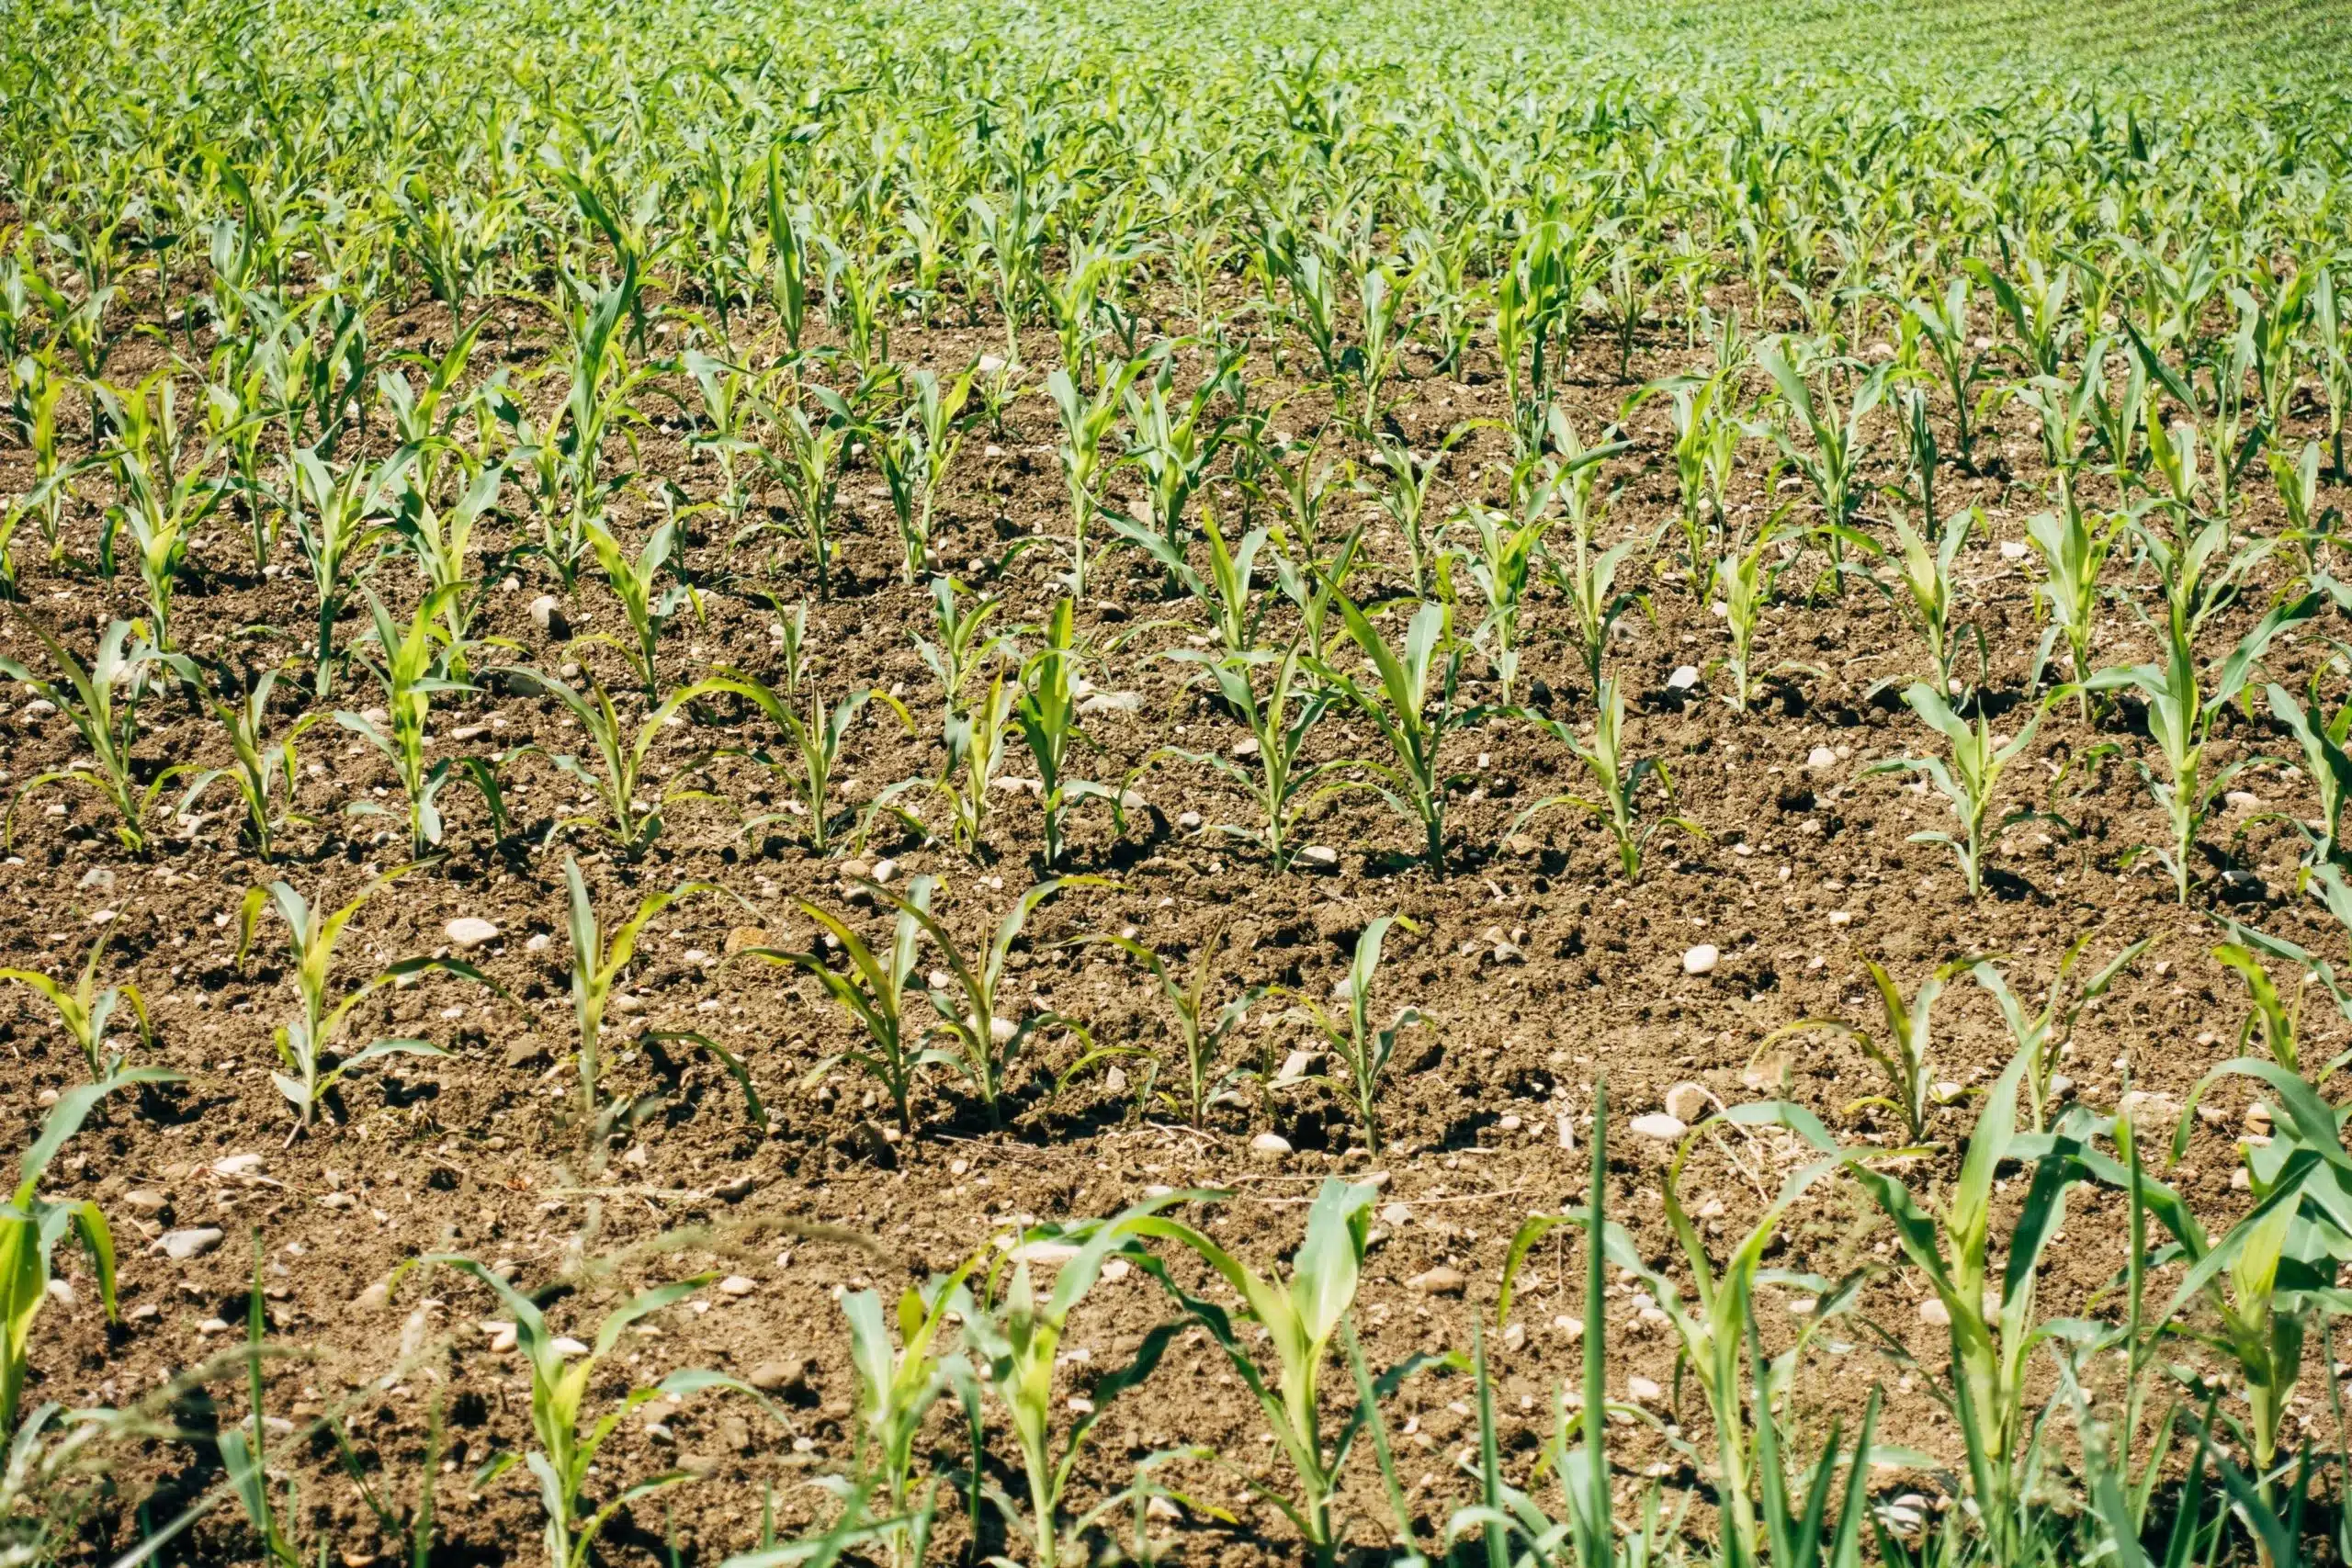 Continuous use of nitrogenous fertilizer damages soil health